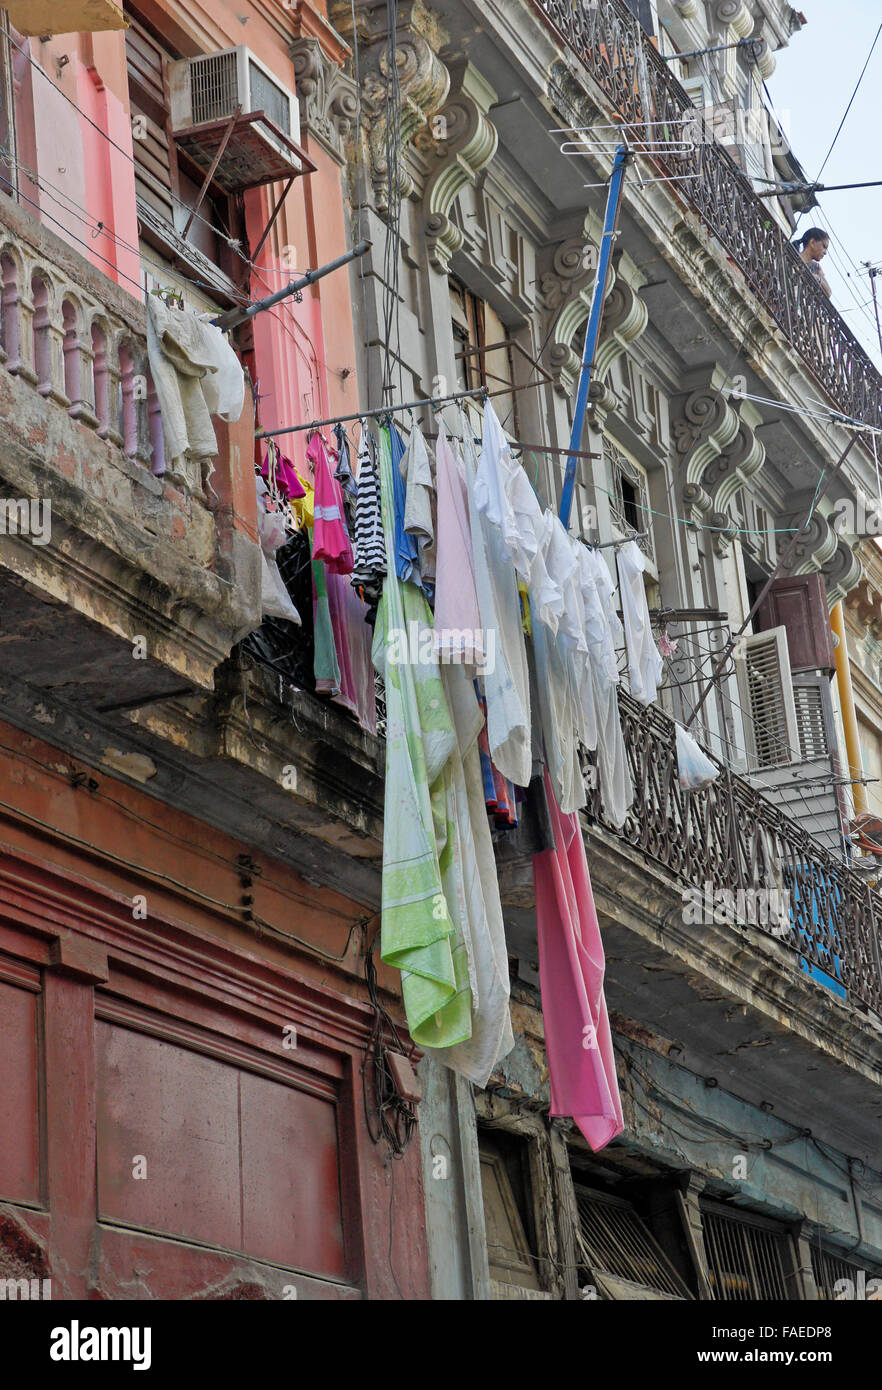 Laundry hanging from balcony, Habana Vieja (Old Havana), Cuba Stock Photo